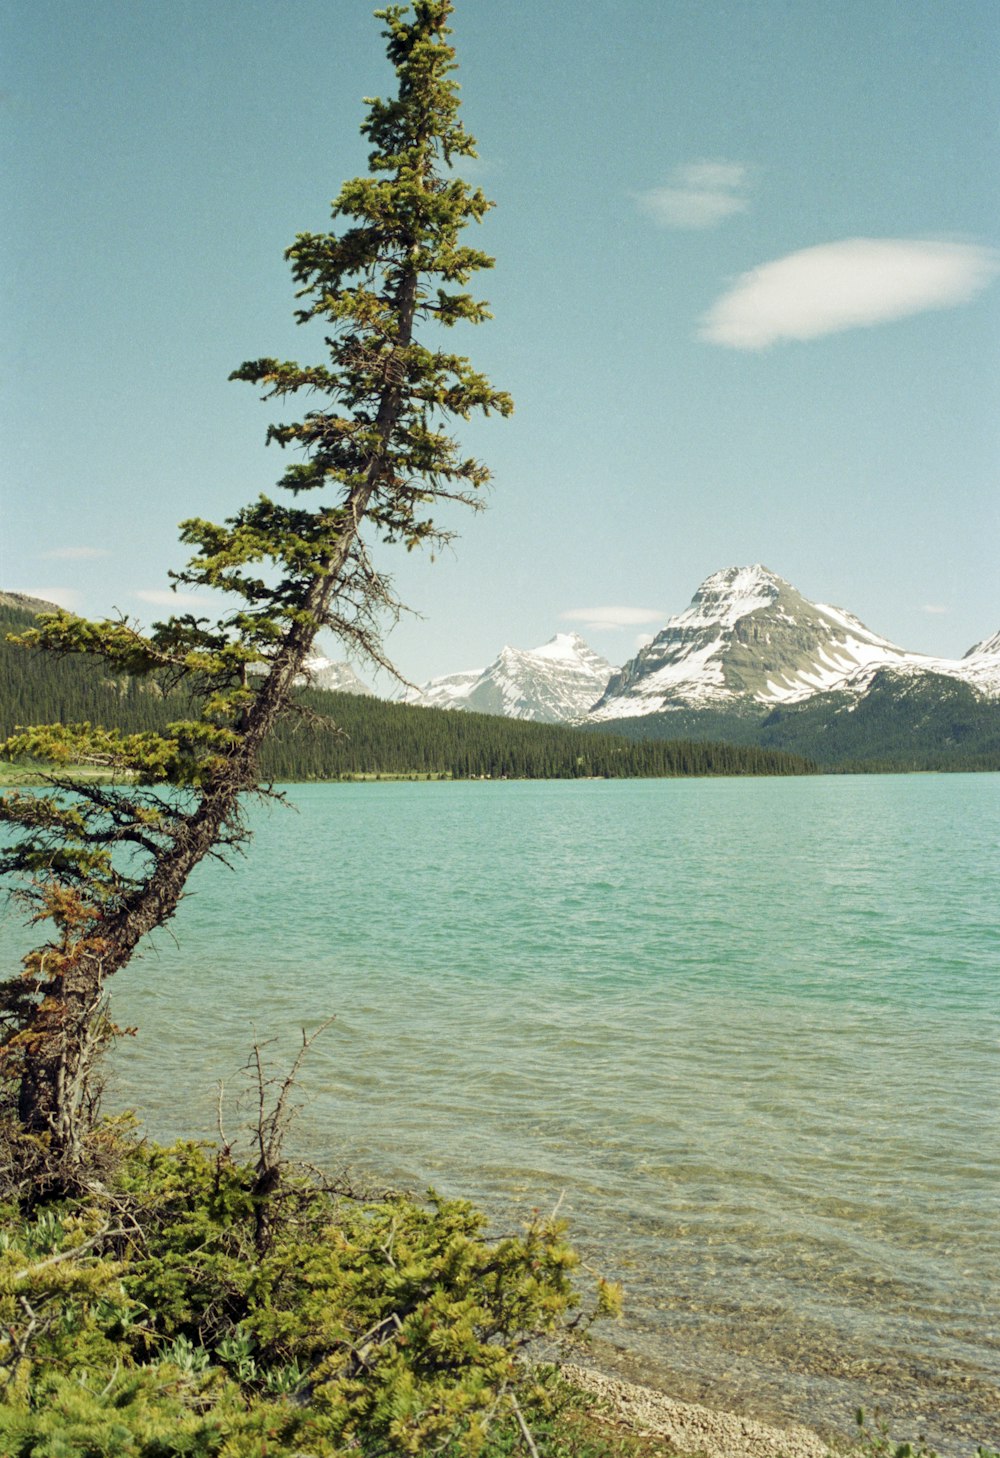 uma árvore solitária na margem de um lago